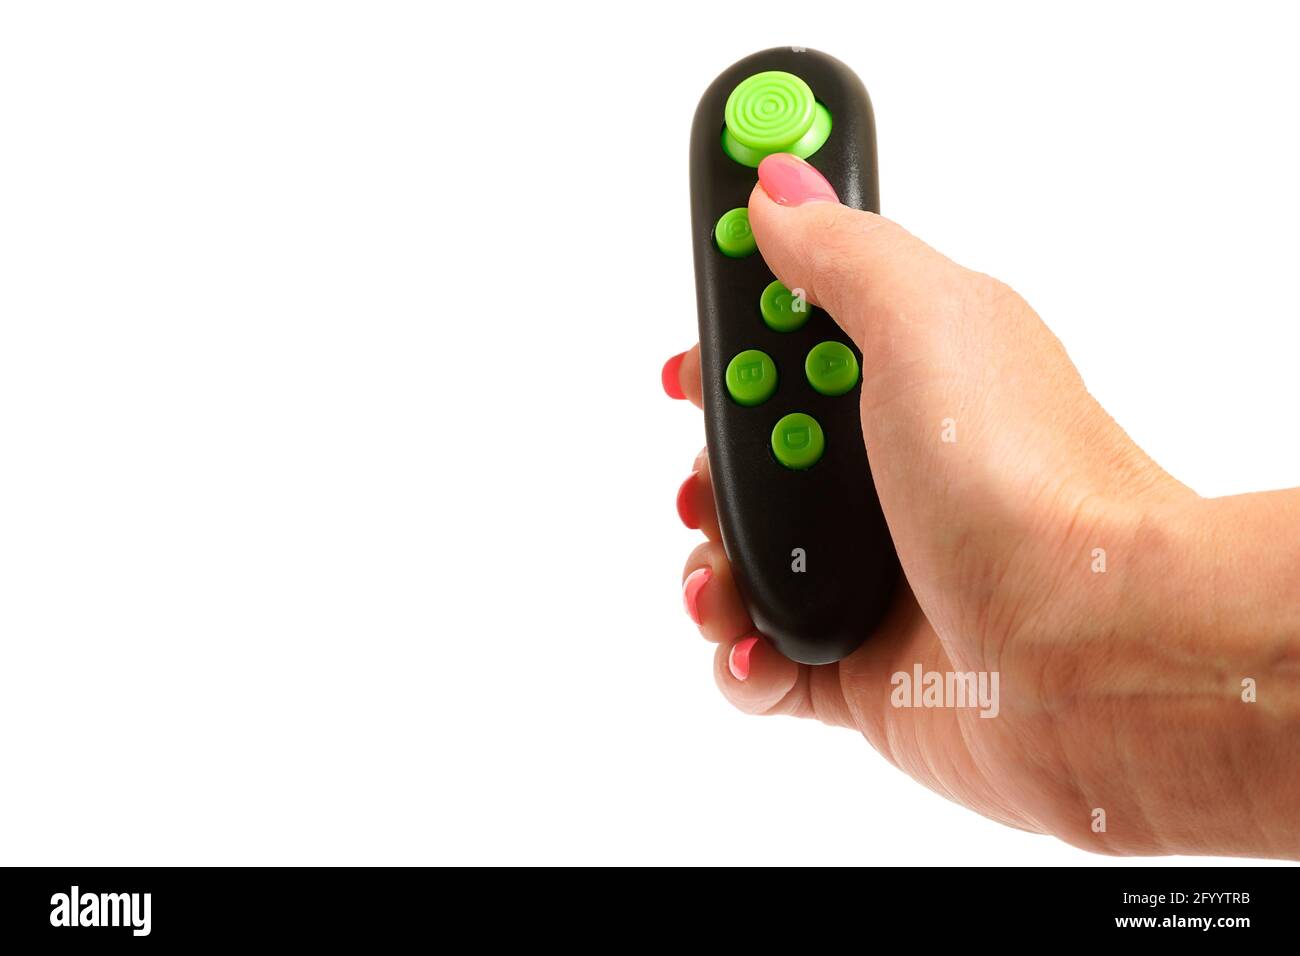 mano adolescente sostiene un joystick modificado en la mano sin inscripciones de la consola de juegos en la mano. vista lateral aislada. Foto de stock